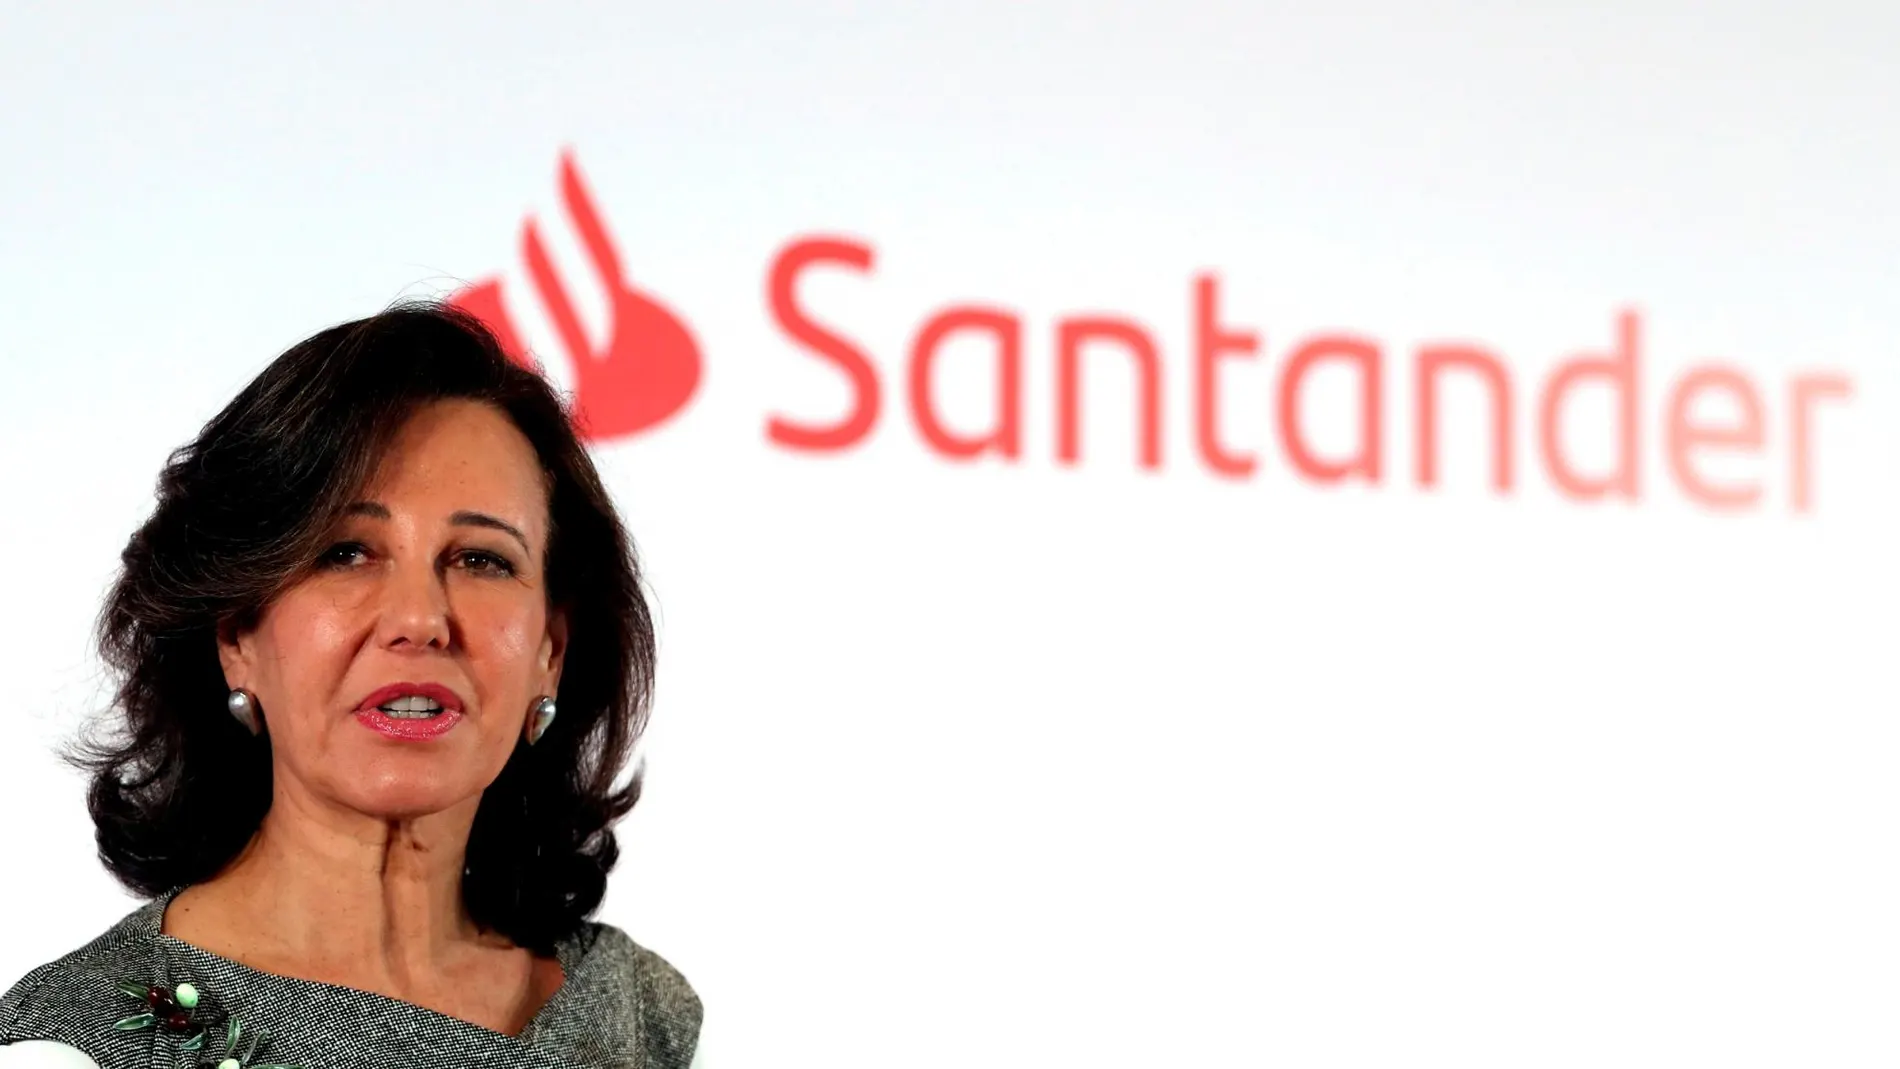 El Santander, que preside Ana Botín, al quedarse con el Banco Popular, protagonizó la última gran operación de concentración bancaria